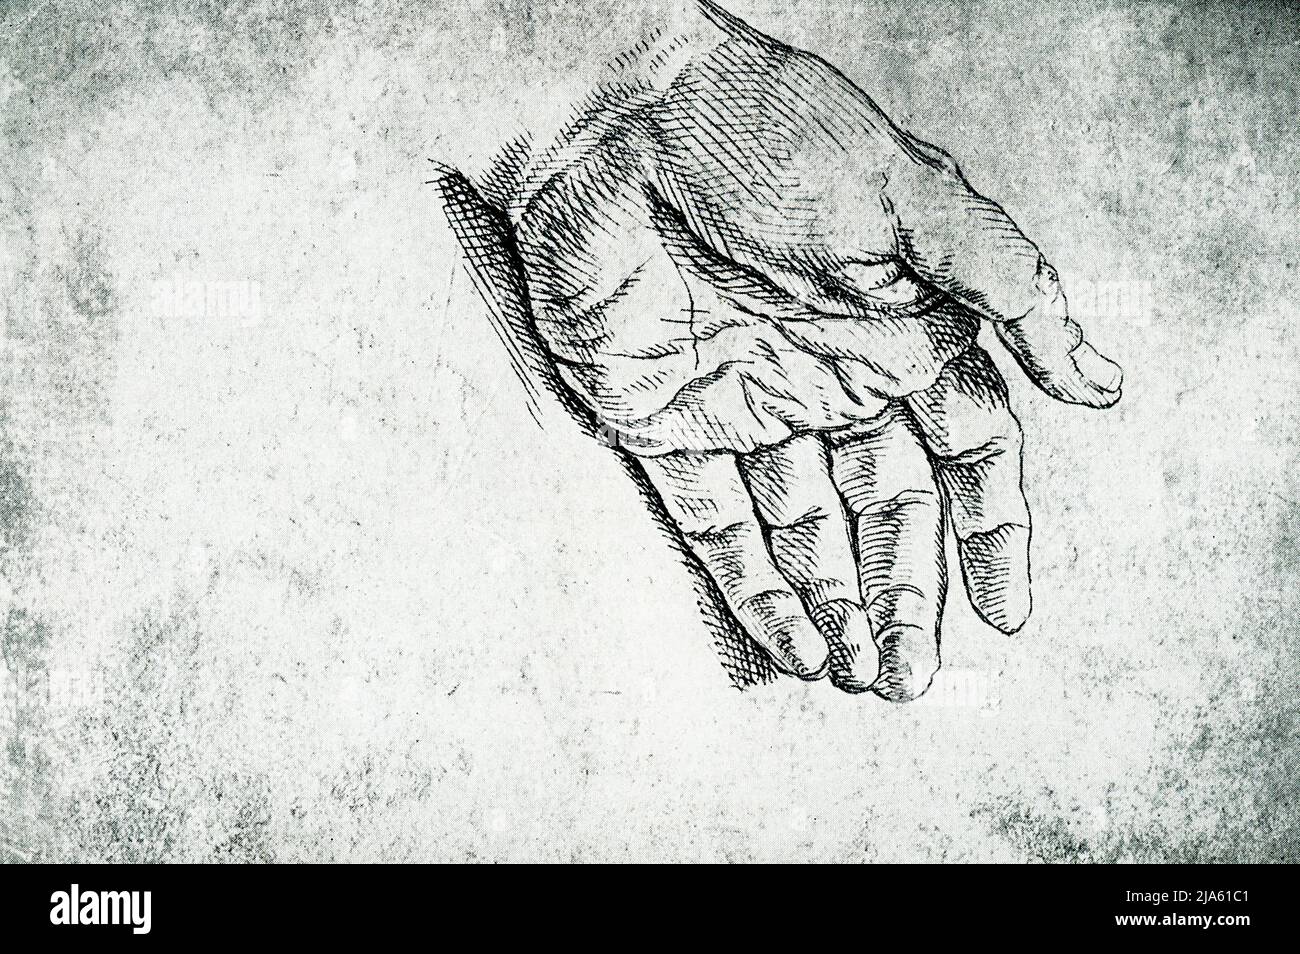 Diese Zeichnung einer Hand ist von Raphael (1483-1520). Das weiche Kissen der Handfläche und die spitzen Fingerspitzen scheinen eher ein Gefühl von Zartheit als Stärke zu geben. Der italienische Maler und Architekt der Hochrenaissance war der italienische Sanzio da Urbino. Sein Werk wird für seine Klarheit der Form, die Leichtigkeit der Komposition und die visuelle Verwirklichung des neoplatonischen Ideals menschlicher Größe bewundert Stockfoto